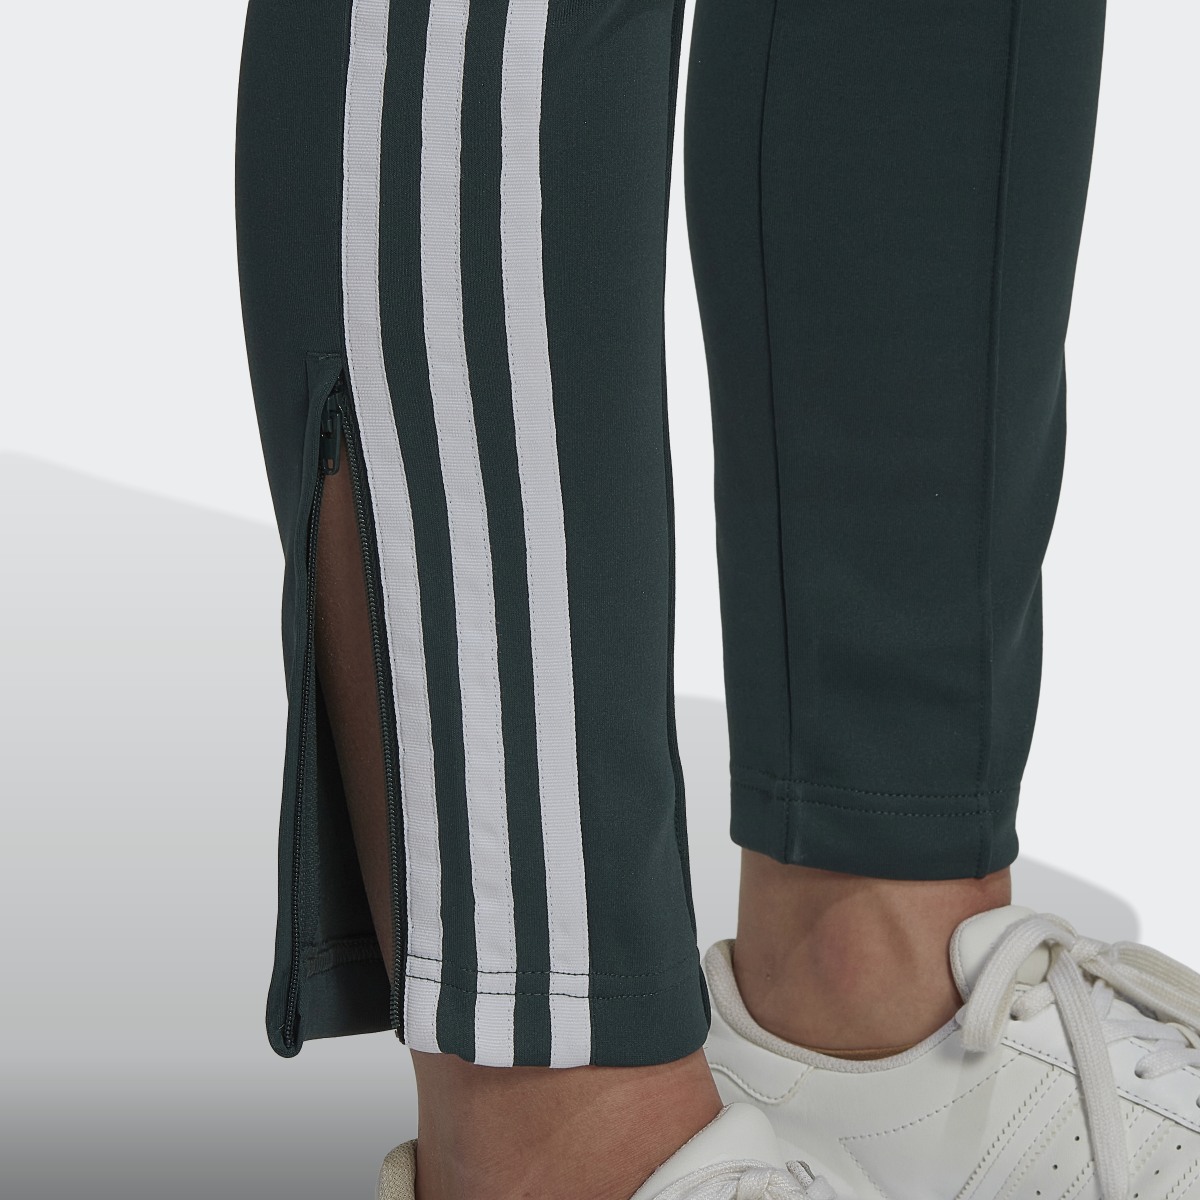 Adidas Primeblue SST Track Pants. 6